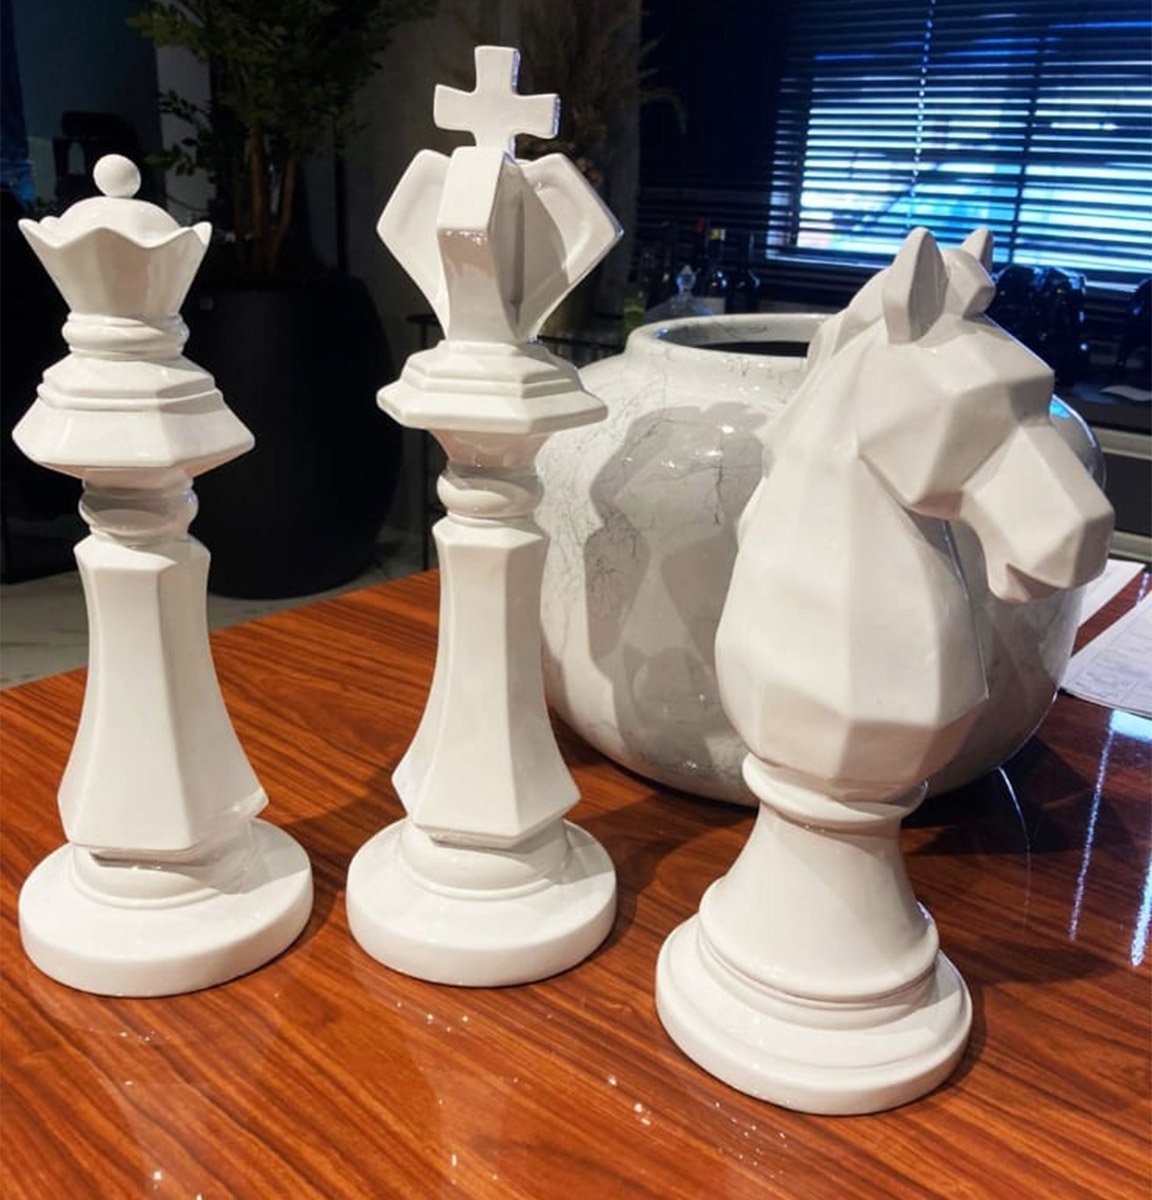 Peão preto único contra grupo de branco no tabuleiro de xadrez